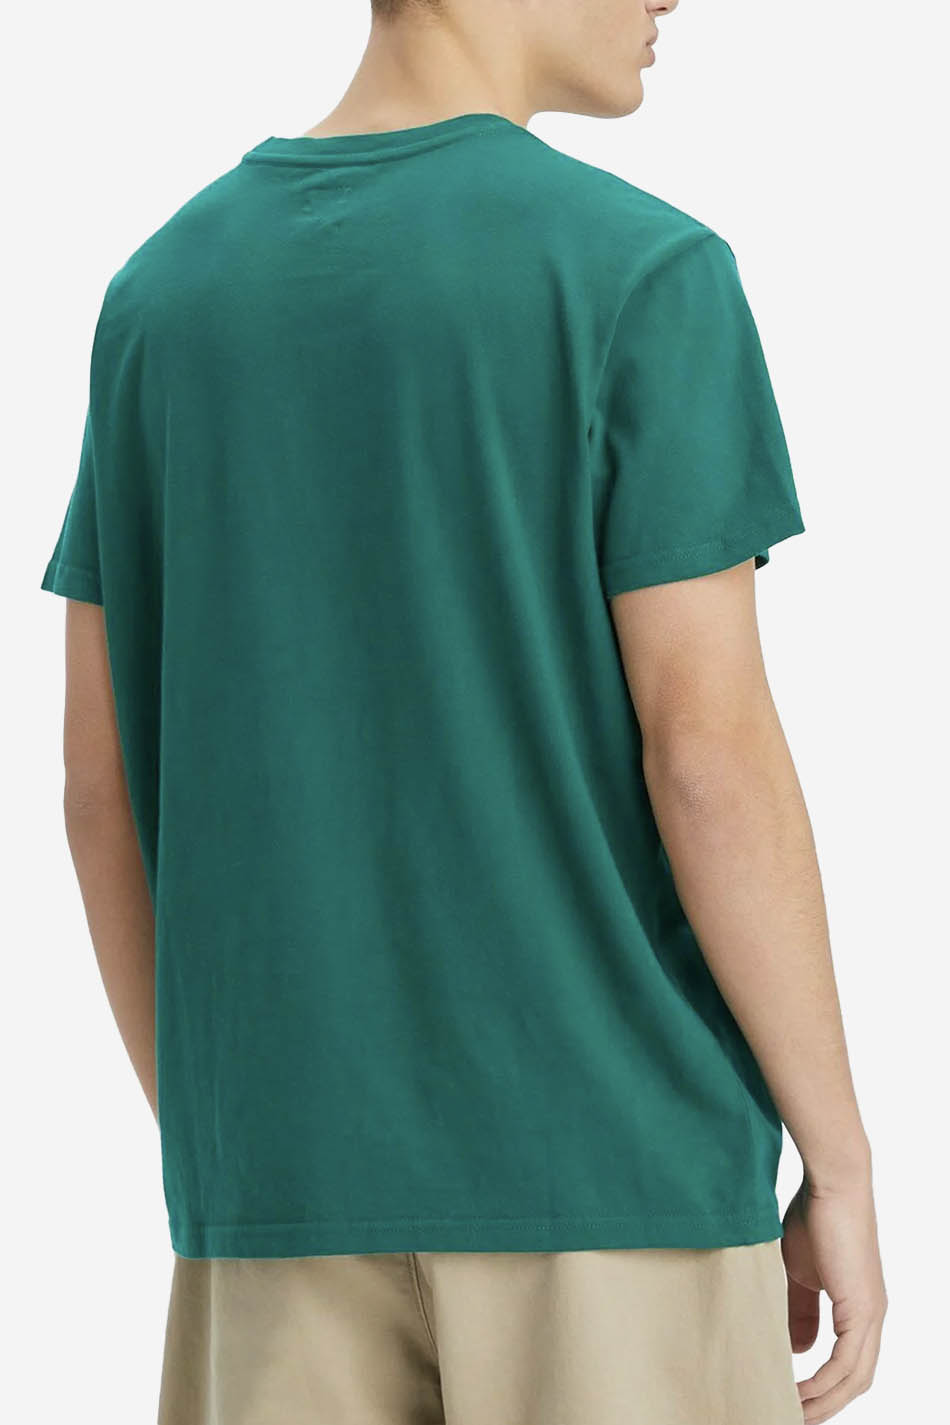 Levis T-Shirt Grün